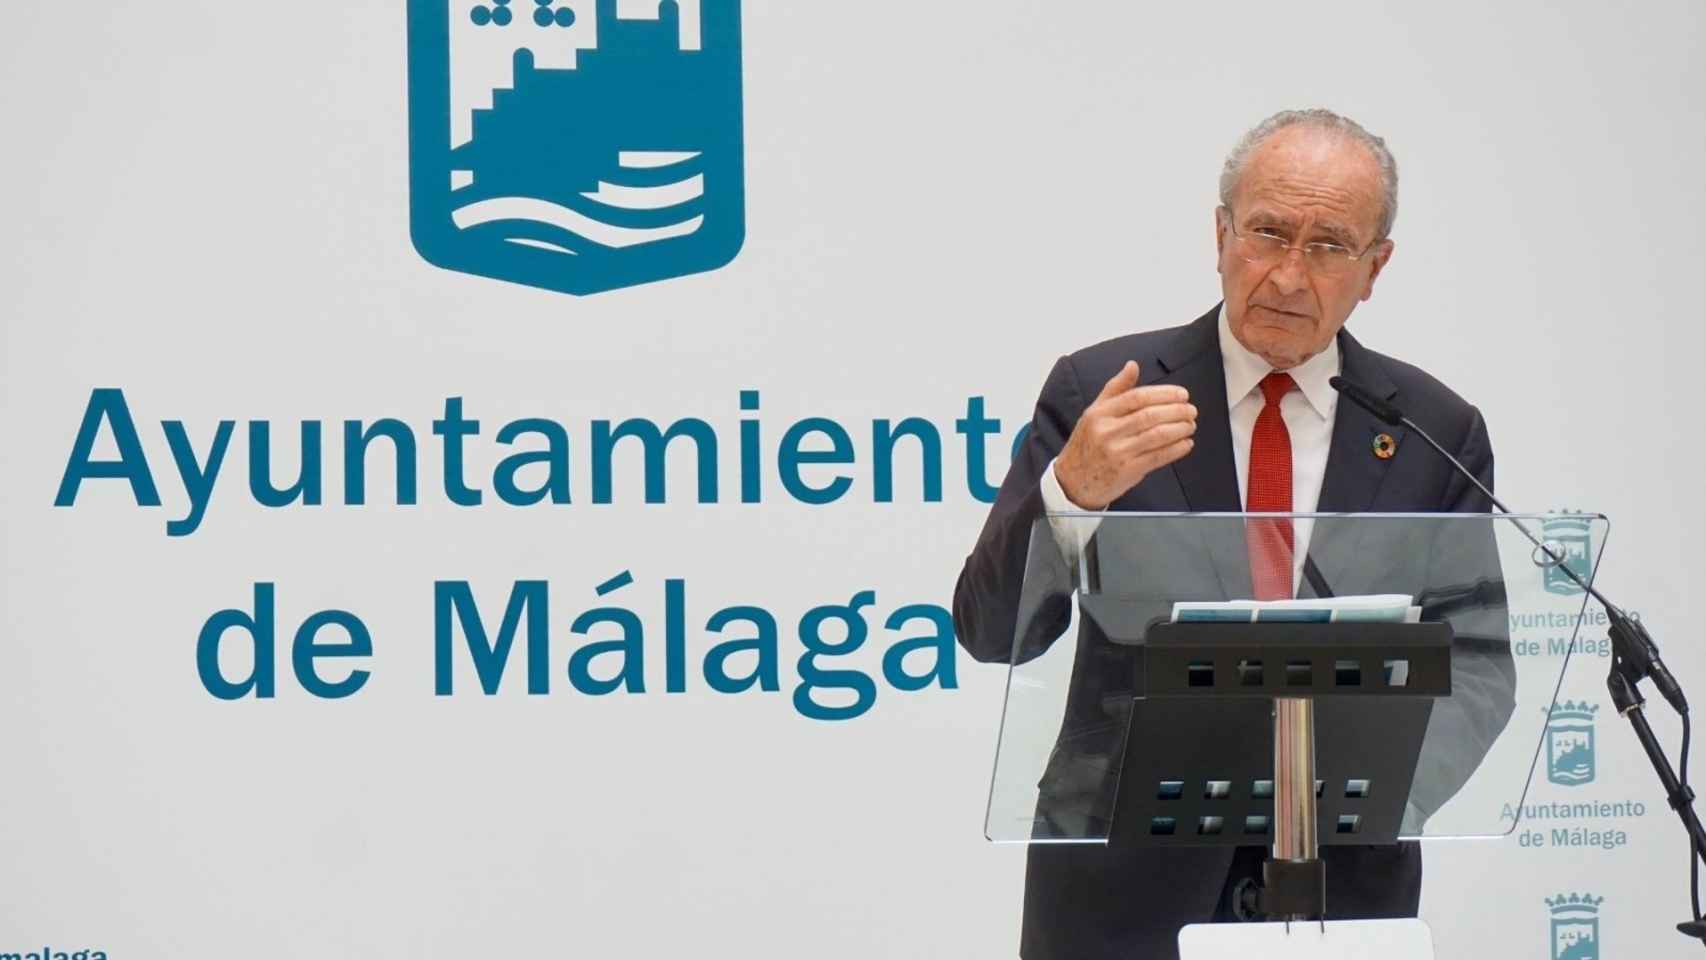 El alcalde de Málaga, en una imagen.